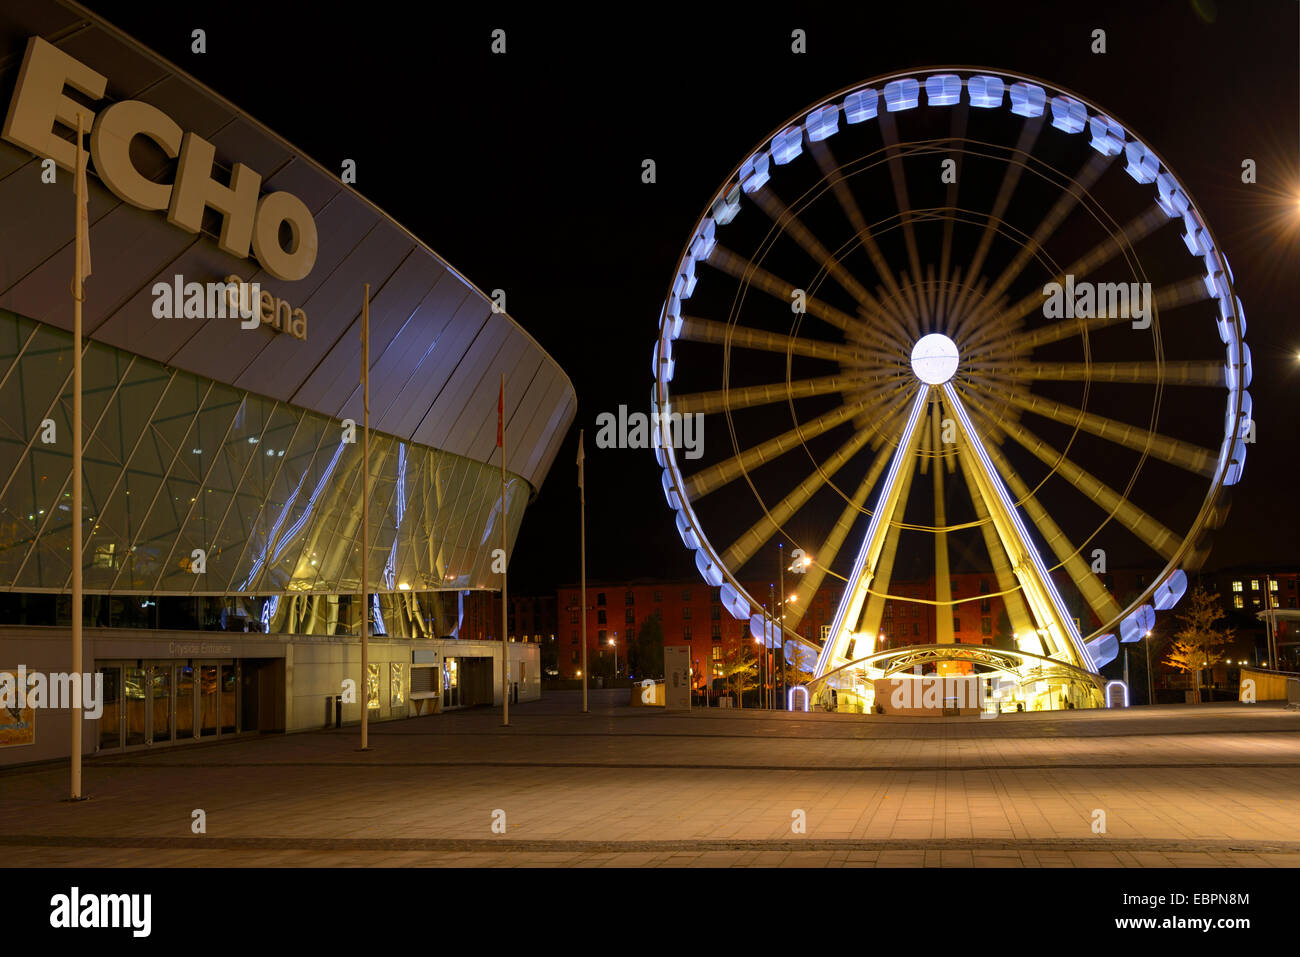 Das Rad von Liverpool und Echo Arena, Kiel Wharf und Liverpool, Merseyside, England, Vereinigtes Königreich, Europa Stockfoto